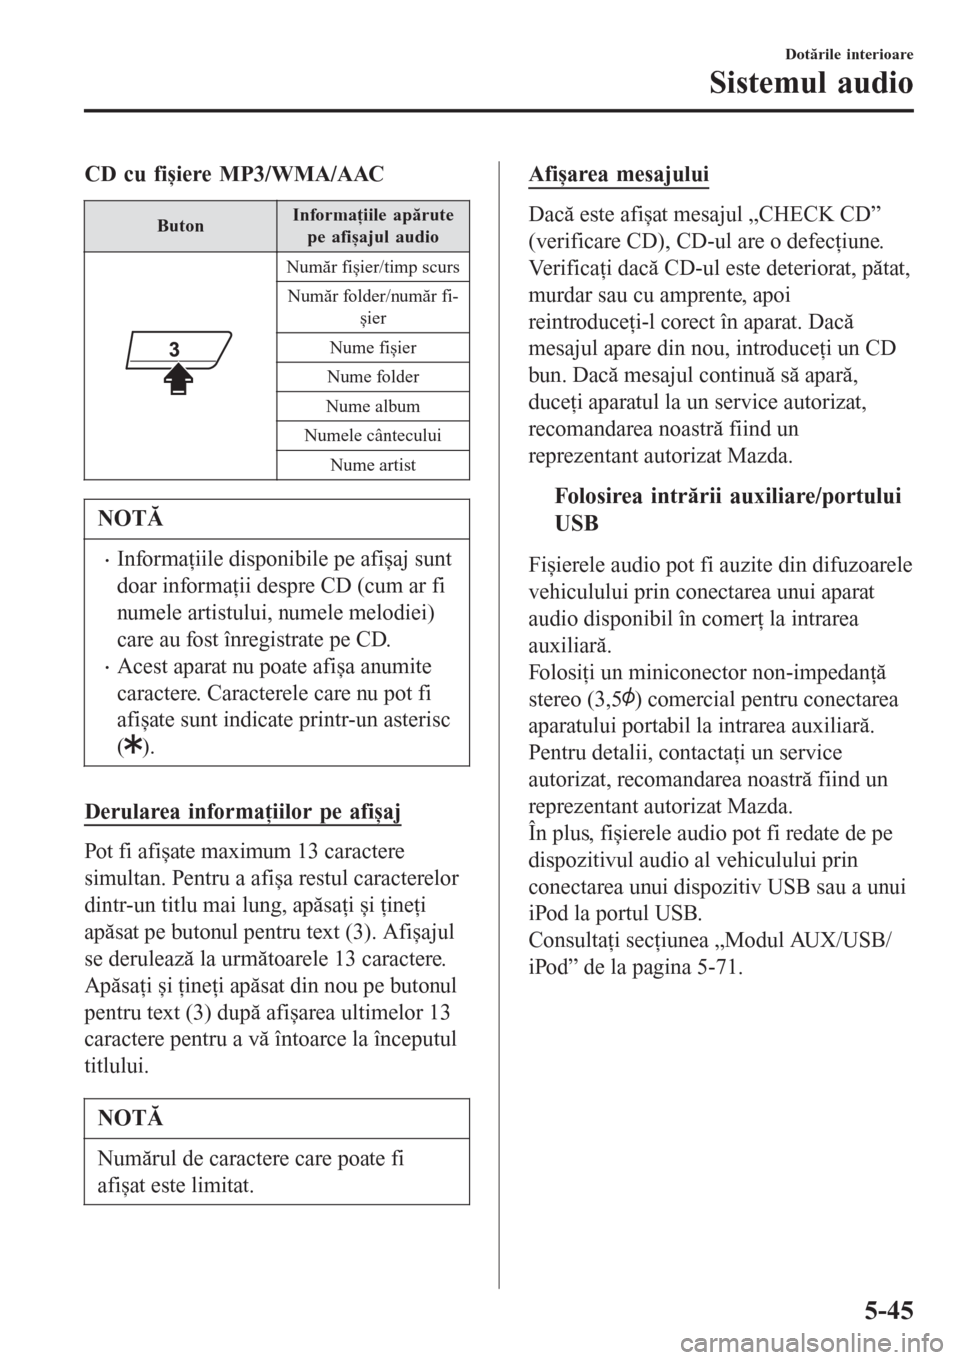 MAZDA MODEL 3 HATCHBACK 2015  Manualul de utilizare (in Romanian) CD cu fișiere MP3/WMA/AAC
ButonInformaţiile apărute
pe afișajul audio
Număr fișier/timp scurs
Număr folder/număr fi-
șier
Nume fișier
Nume folder
Nume album
Numele cântecului
Nume artist
NO